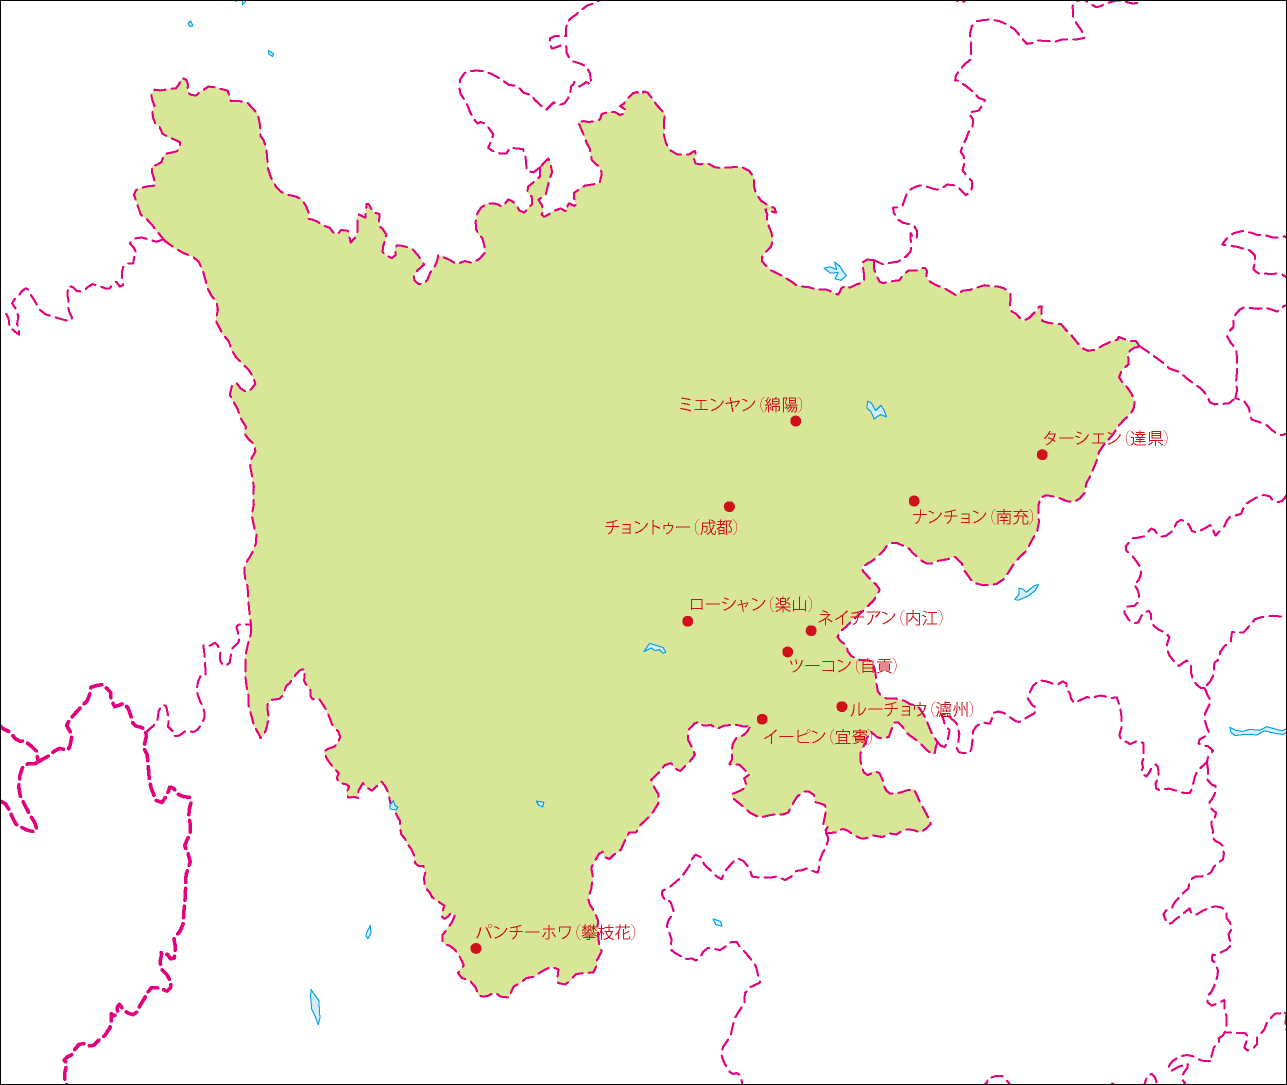 四川省地図(主な都市あり)のフリーデータの画像